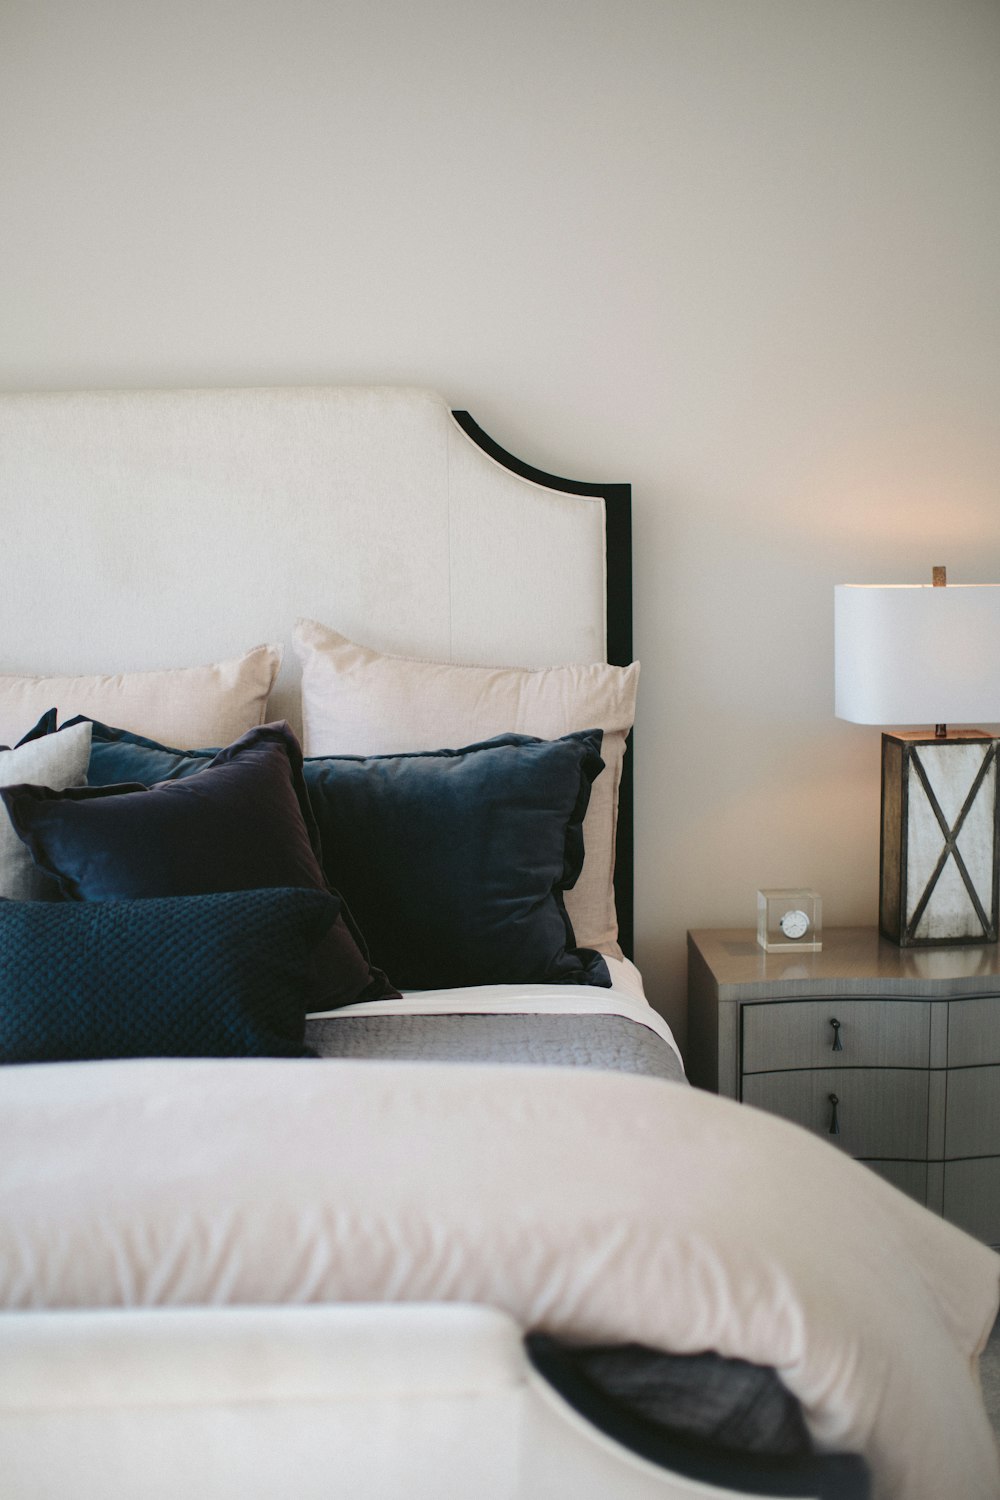 Cuscini da letto in bianco e nero sul letto foto – Al chiuso